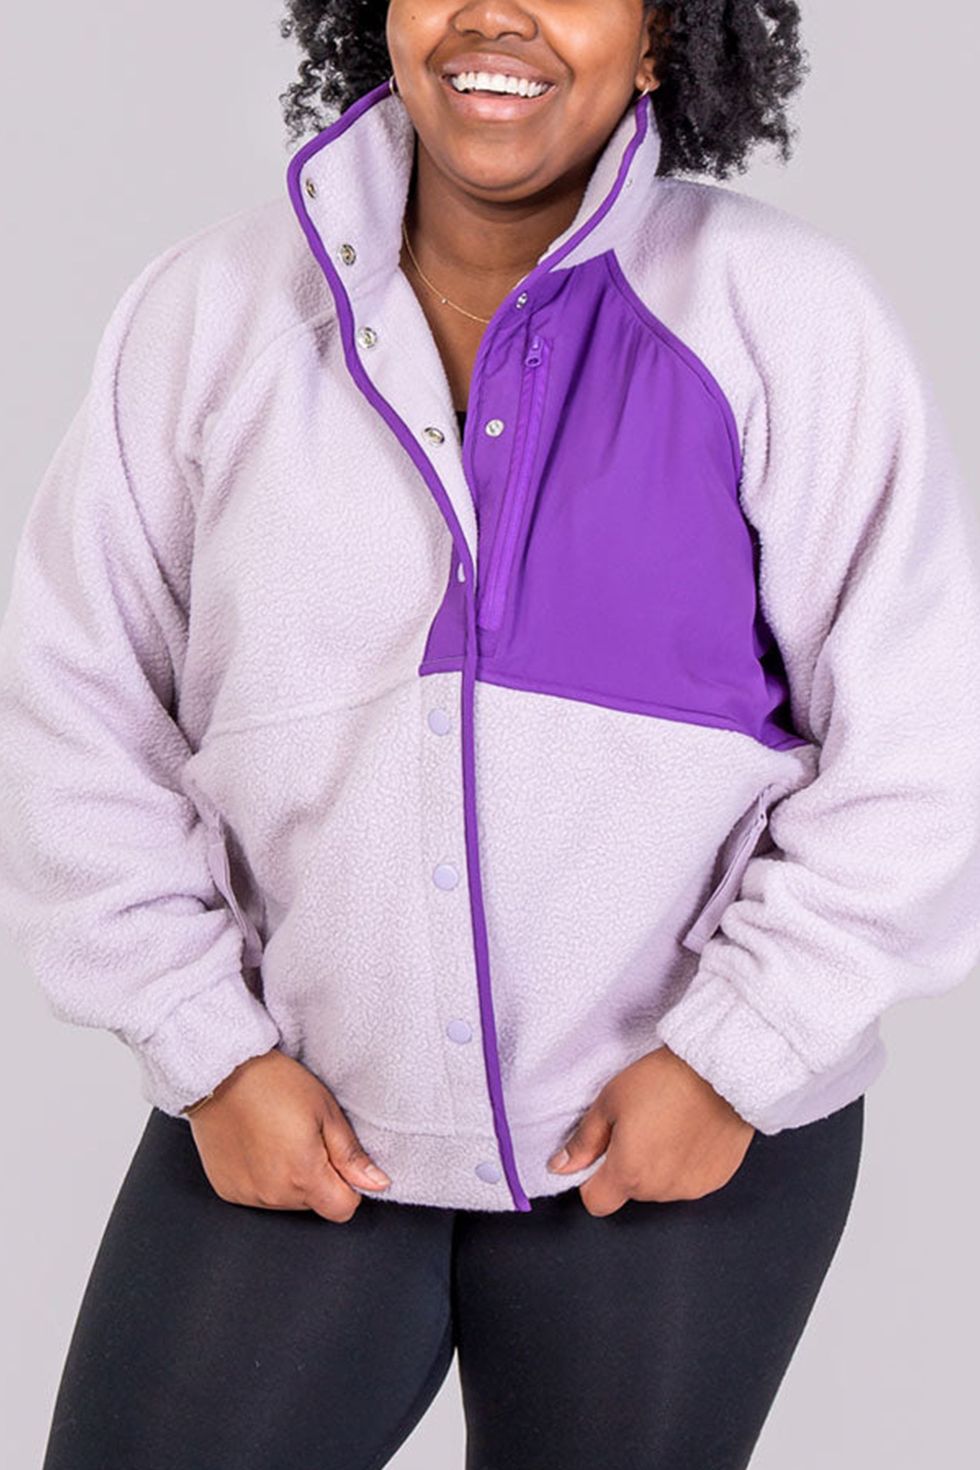 Calvin Klein Women's Athleisure Fitness Sweatshirt Purple Size X